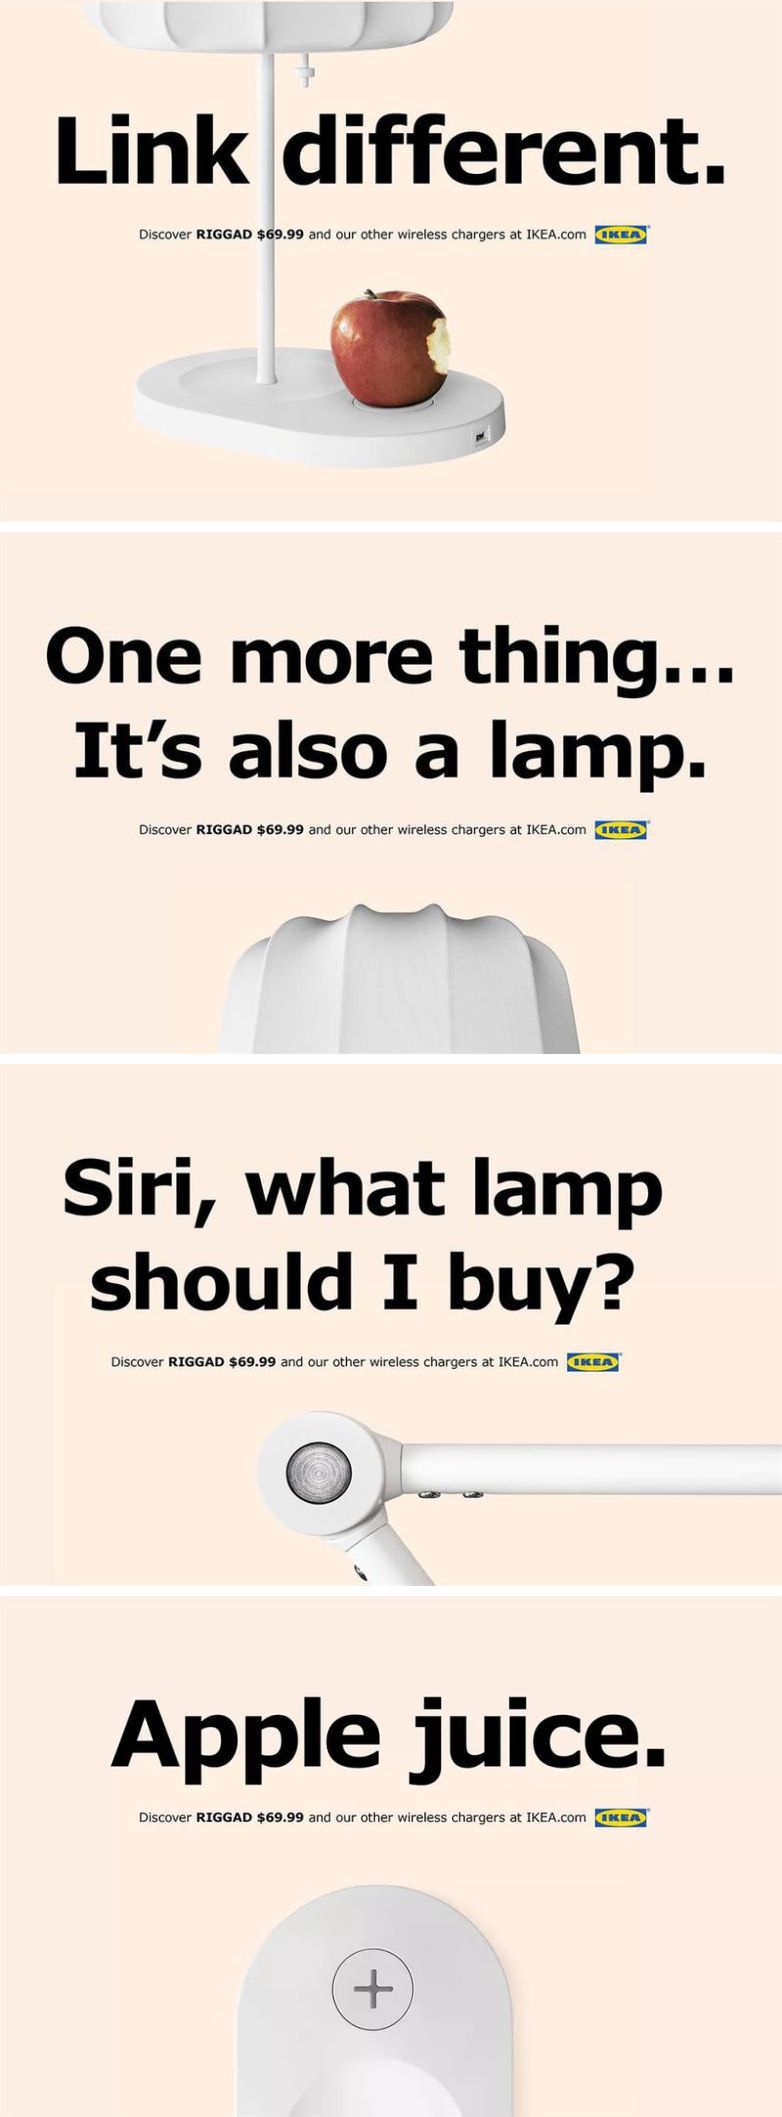 Az IKEA kedvez az iPhone 8 tulajoknak